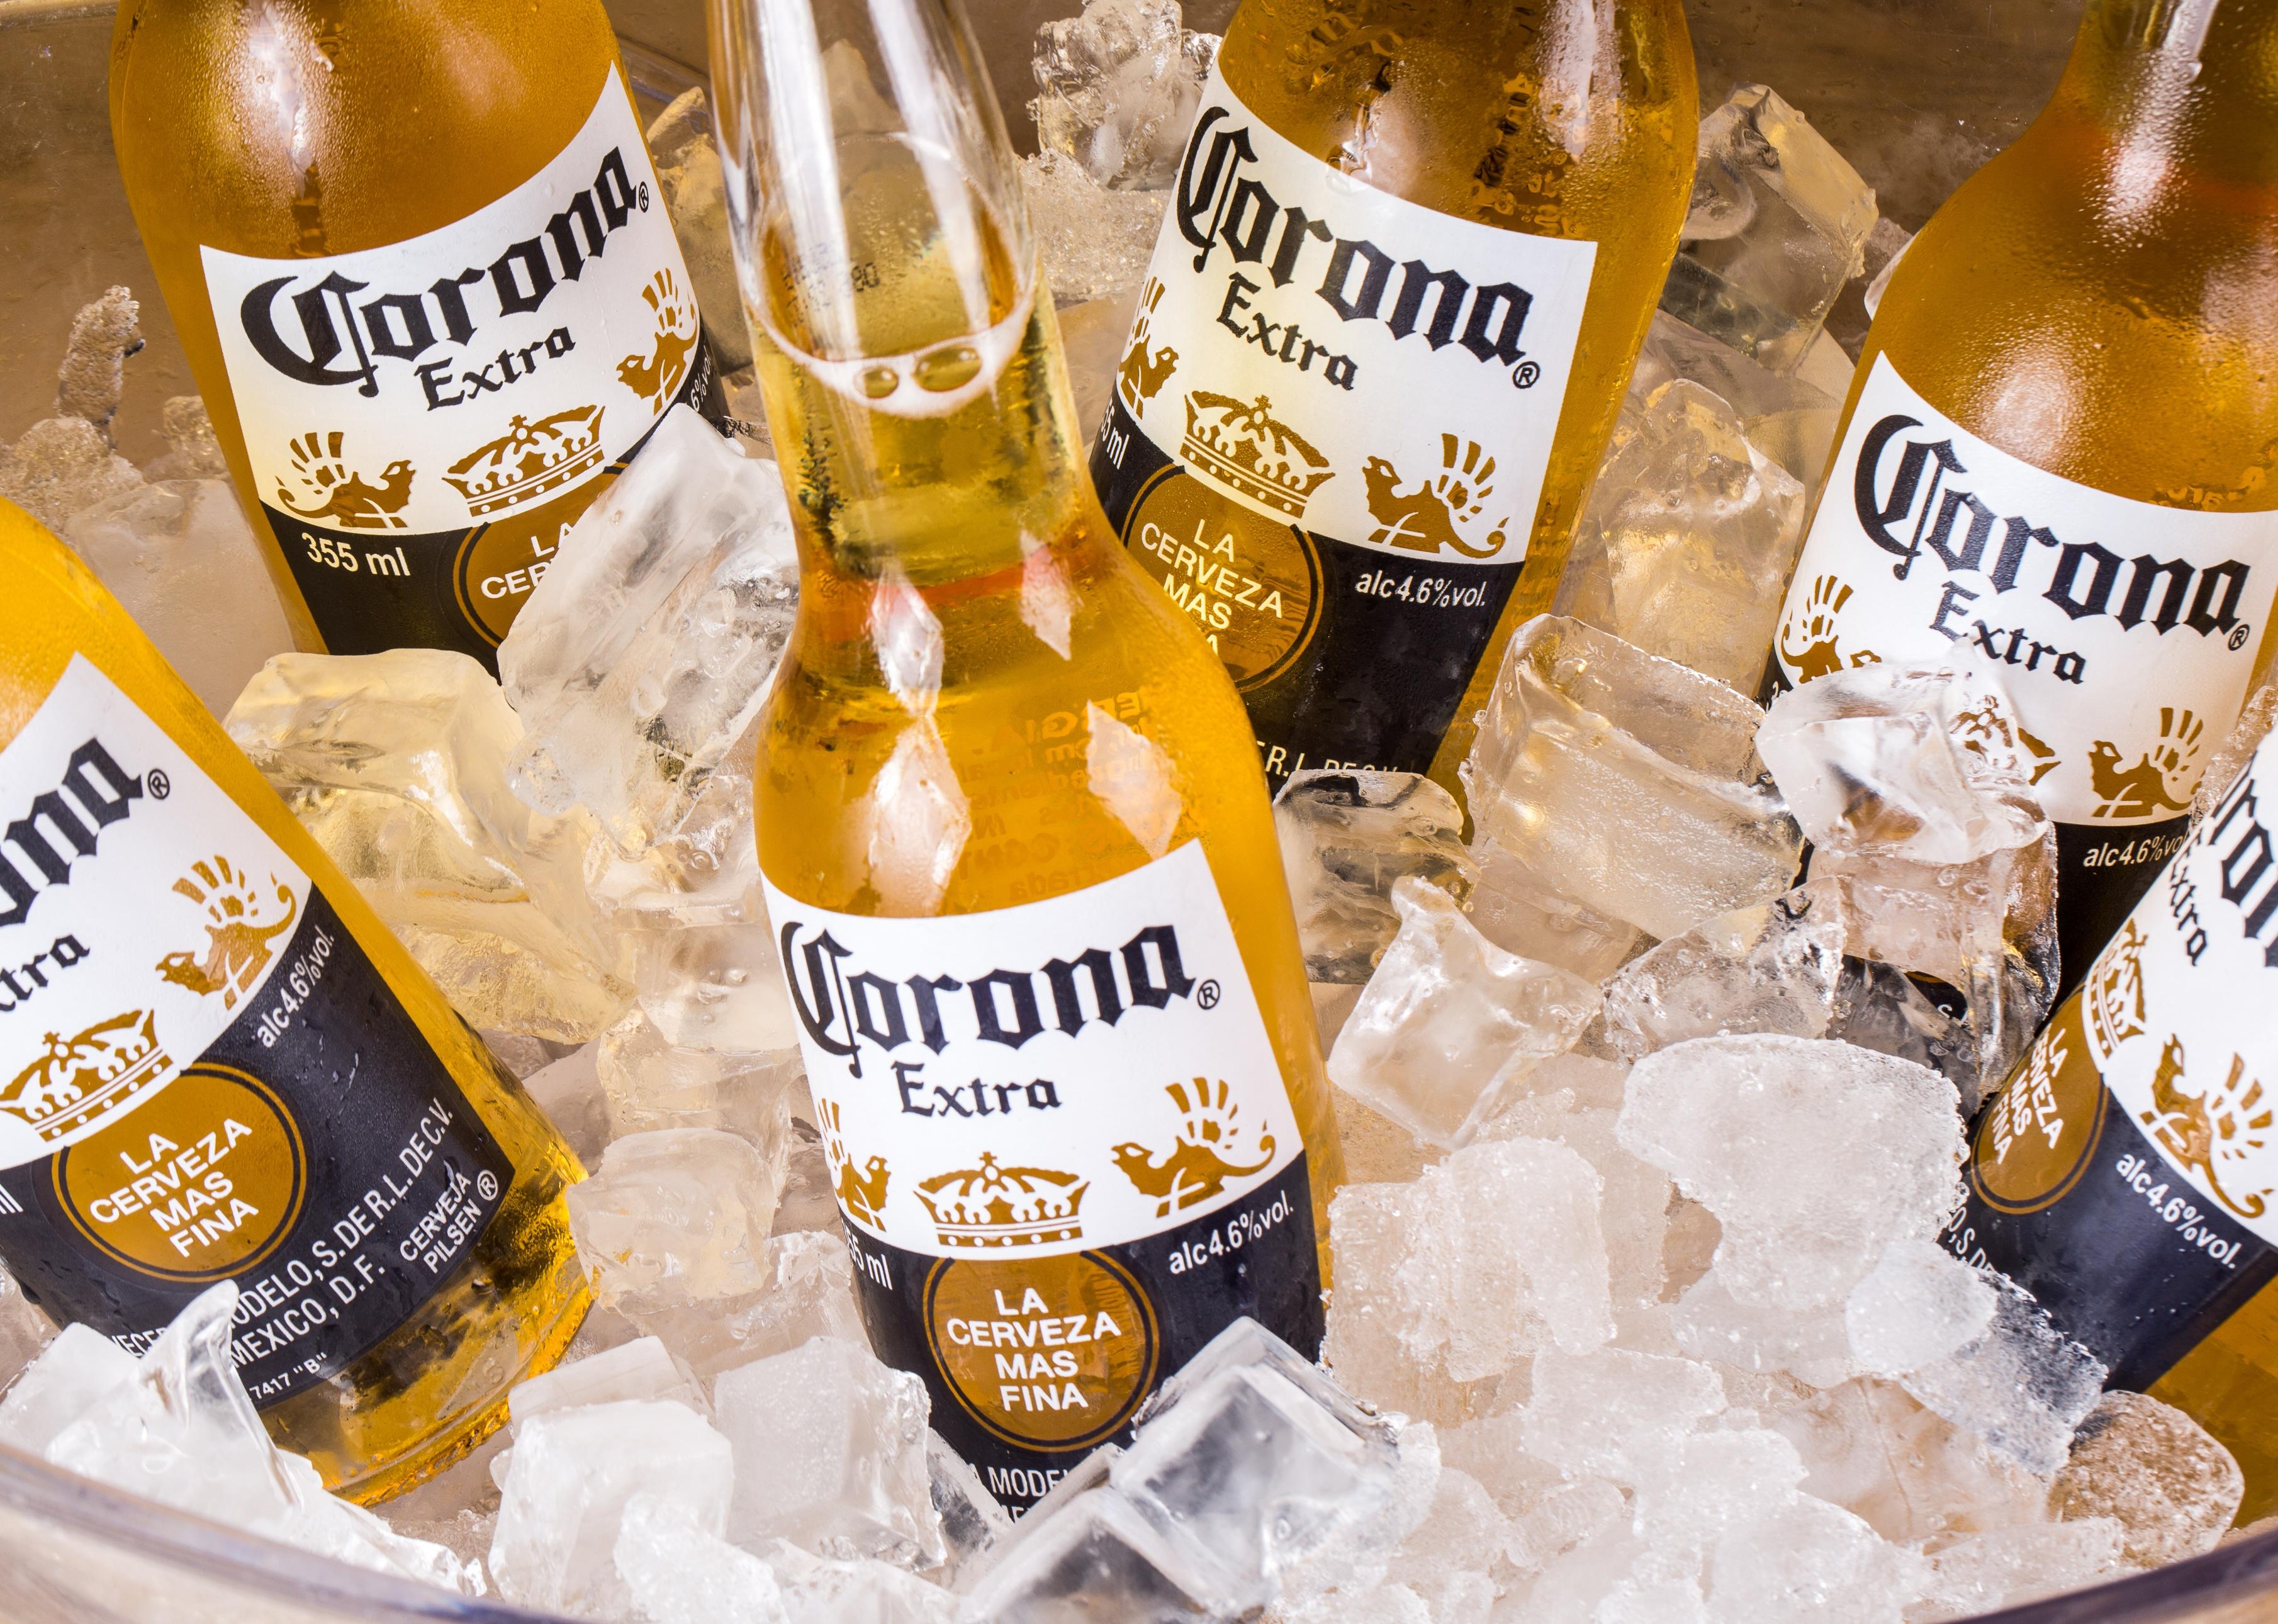 Bottles of Corona beers on ice